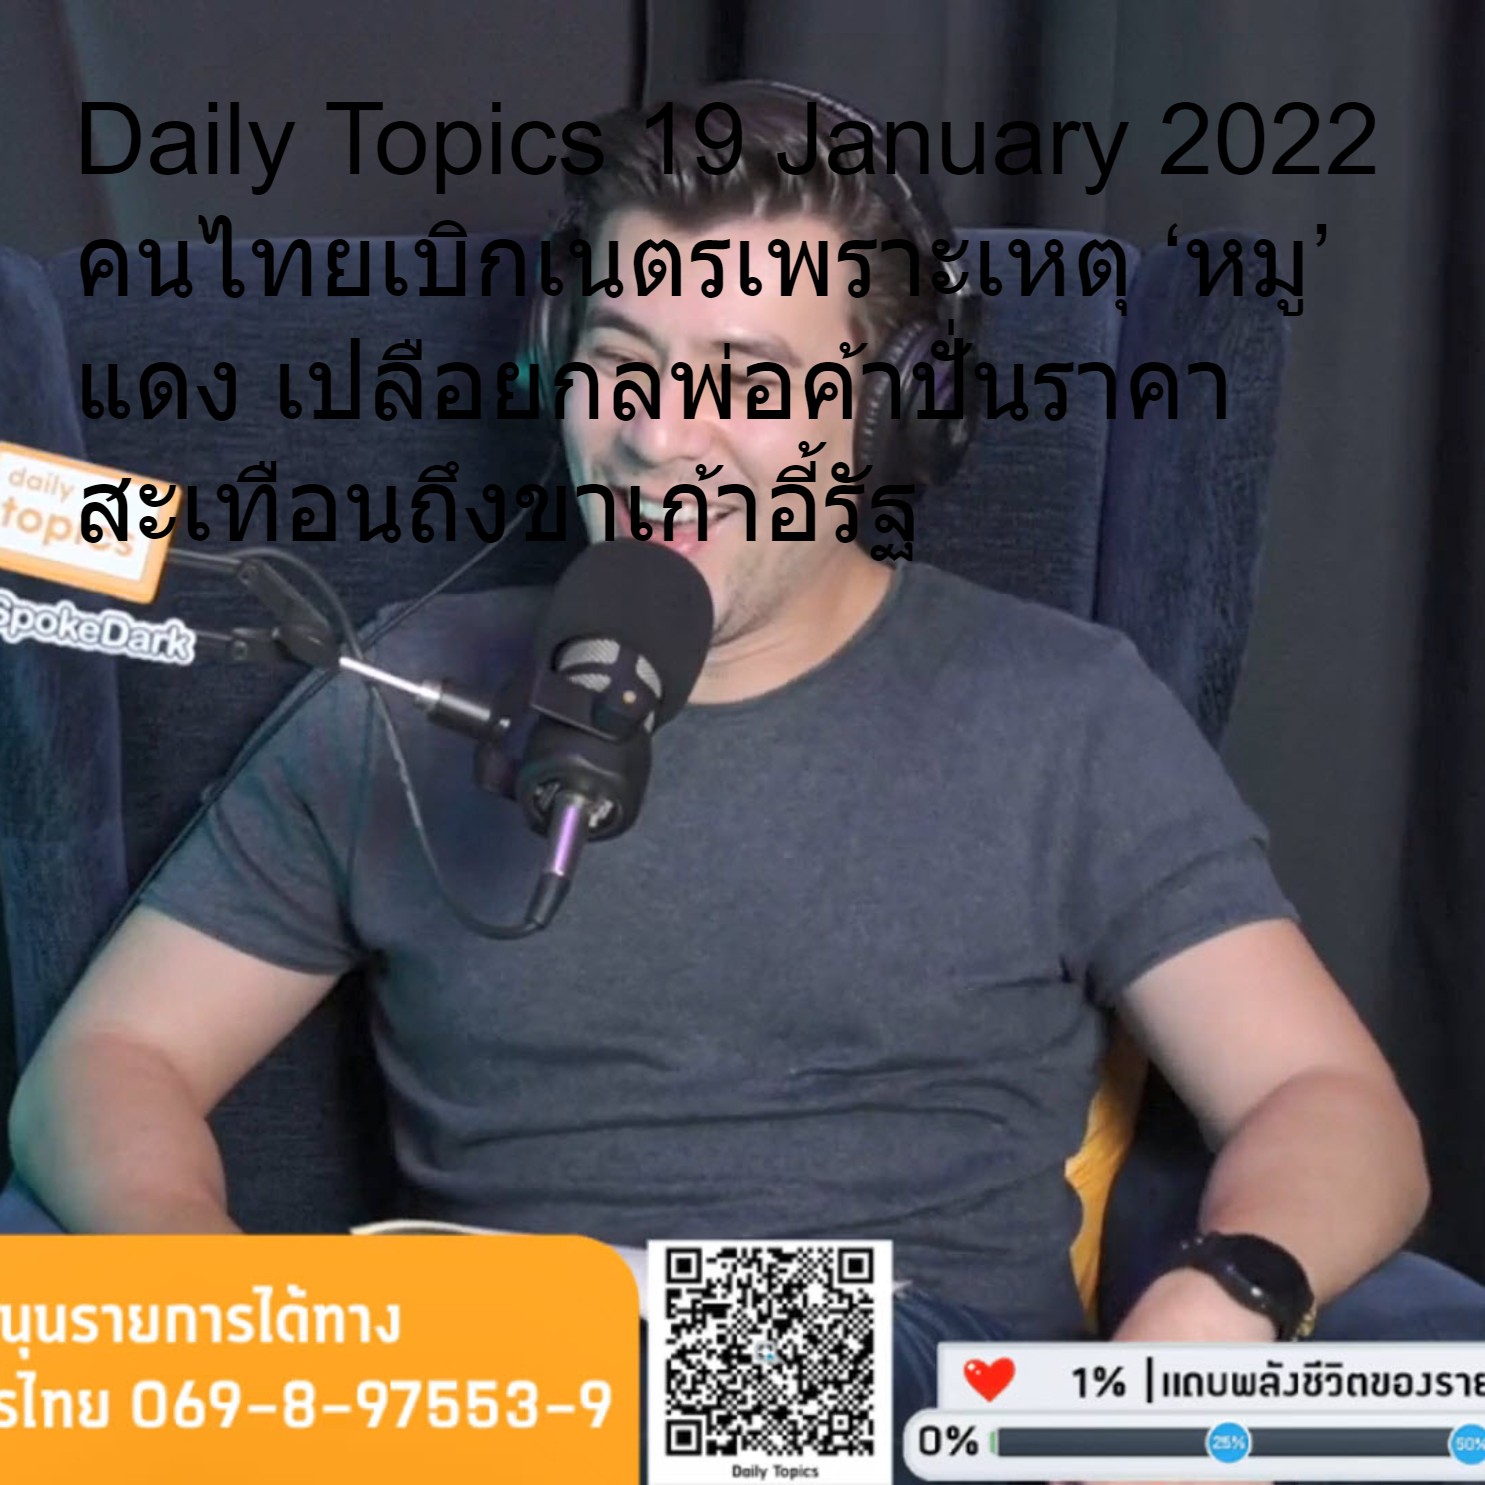 Daily Topics 19 January 2022 คนไทยเบิกเนตรเพราะเหตุ ‘หมู’ แดง เปลือยกลพ่อค้าปั่นราคา สะเทือนถึงขาเก้าอี้รัฐ